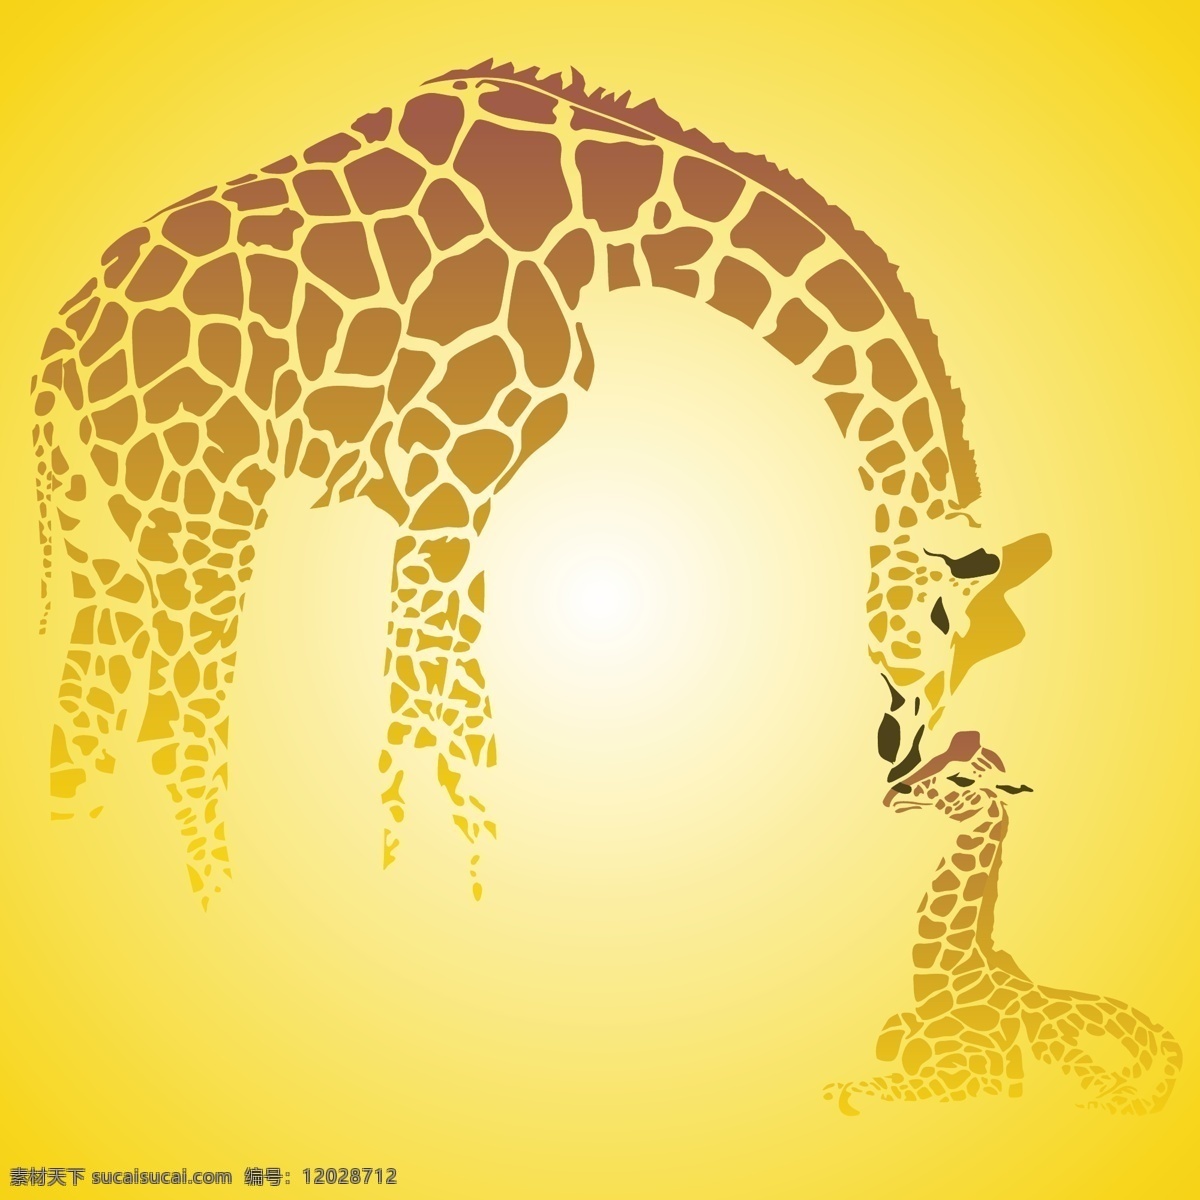 web 背景 插画 创意 非洲 免费 太阳 图形 病 媒 生物 时尚 独特的 原始的 高质量 质量 新鲜的 设计长颈鹿 长颈鹿妈妈 小长颈鹿 辉光 黄色的光芒 人工智能 摘要背景 psd源文件